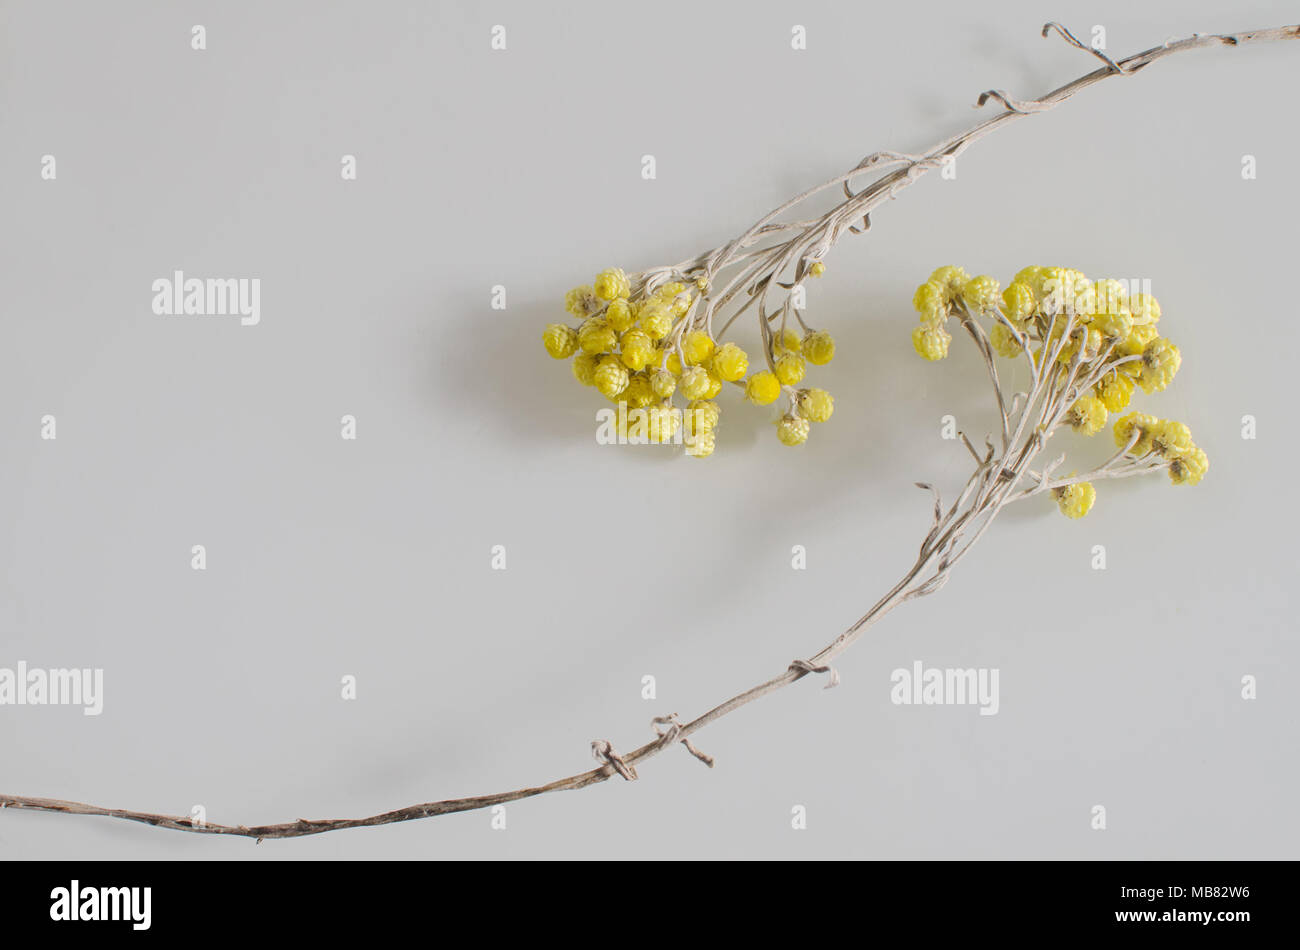 Composición con dos hermosas flores amarillas marchito Foto de stock